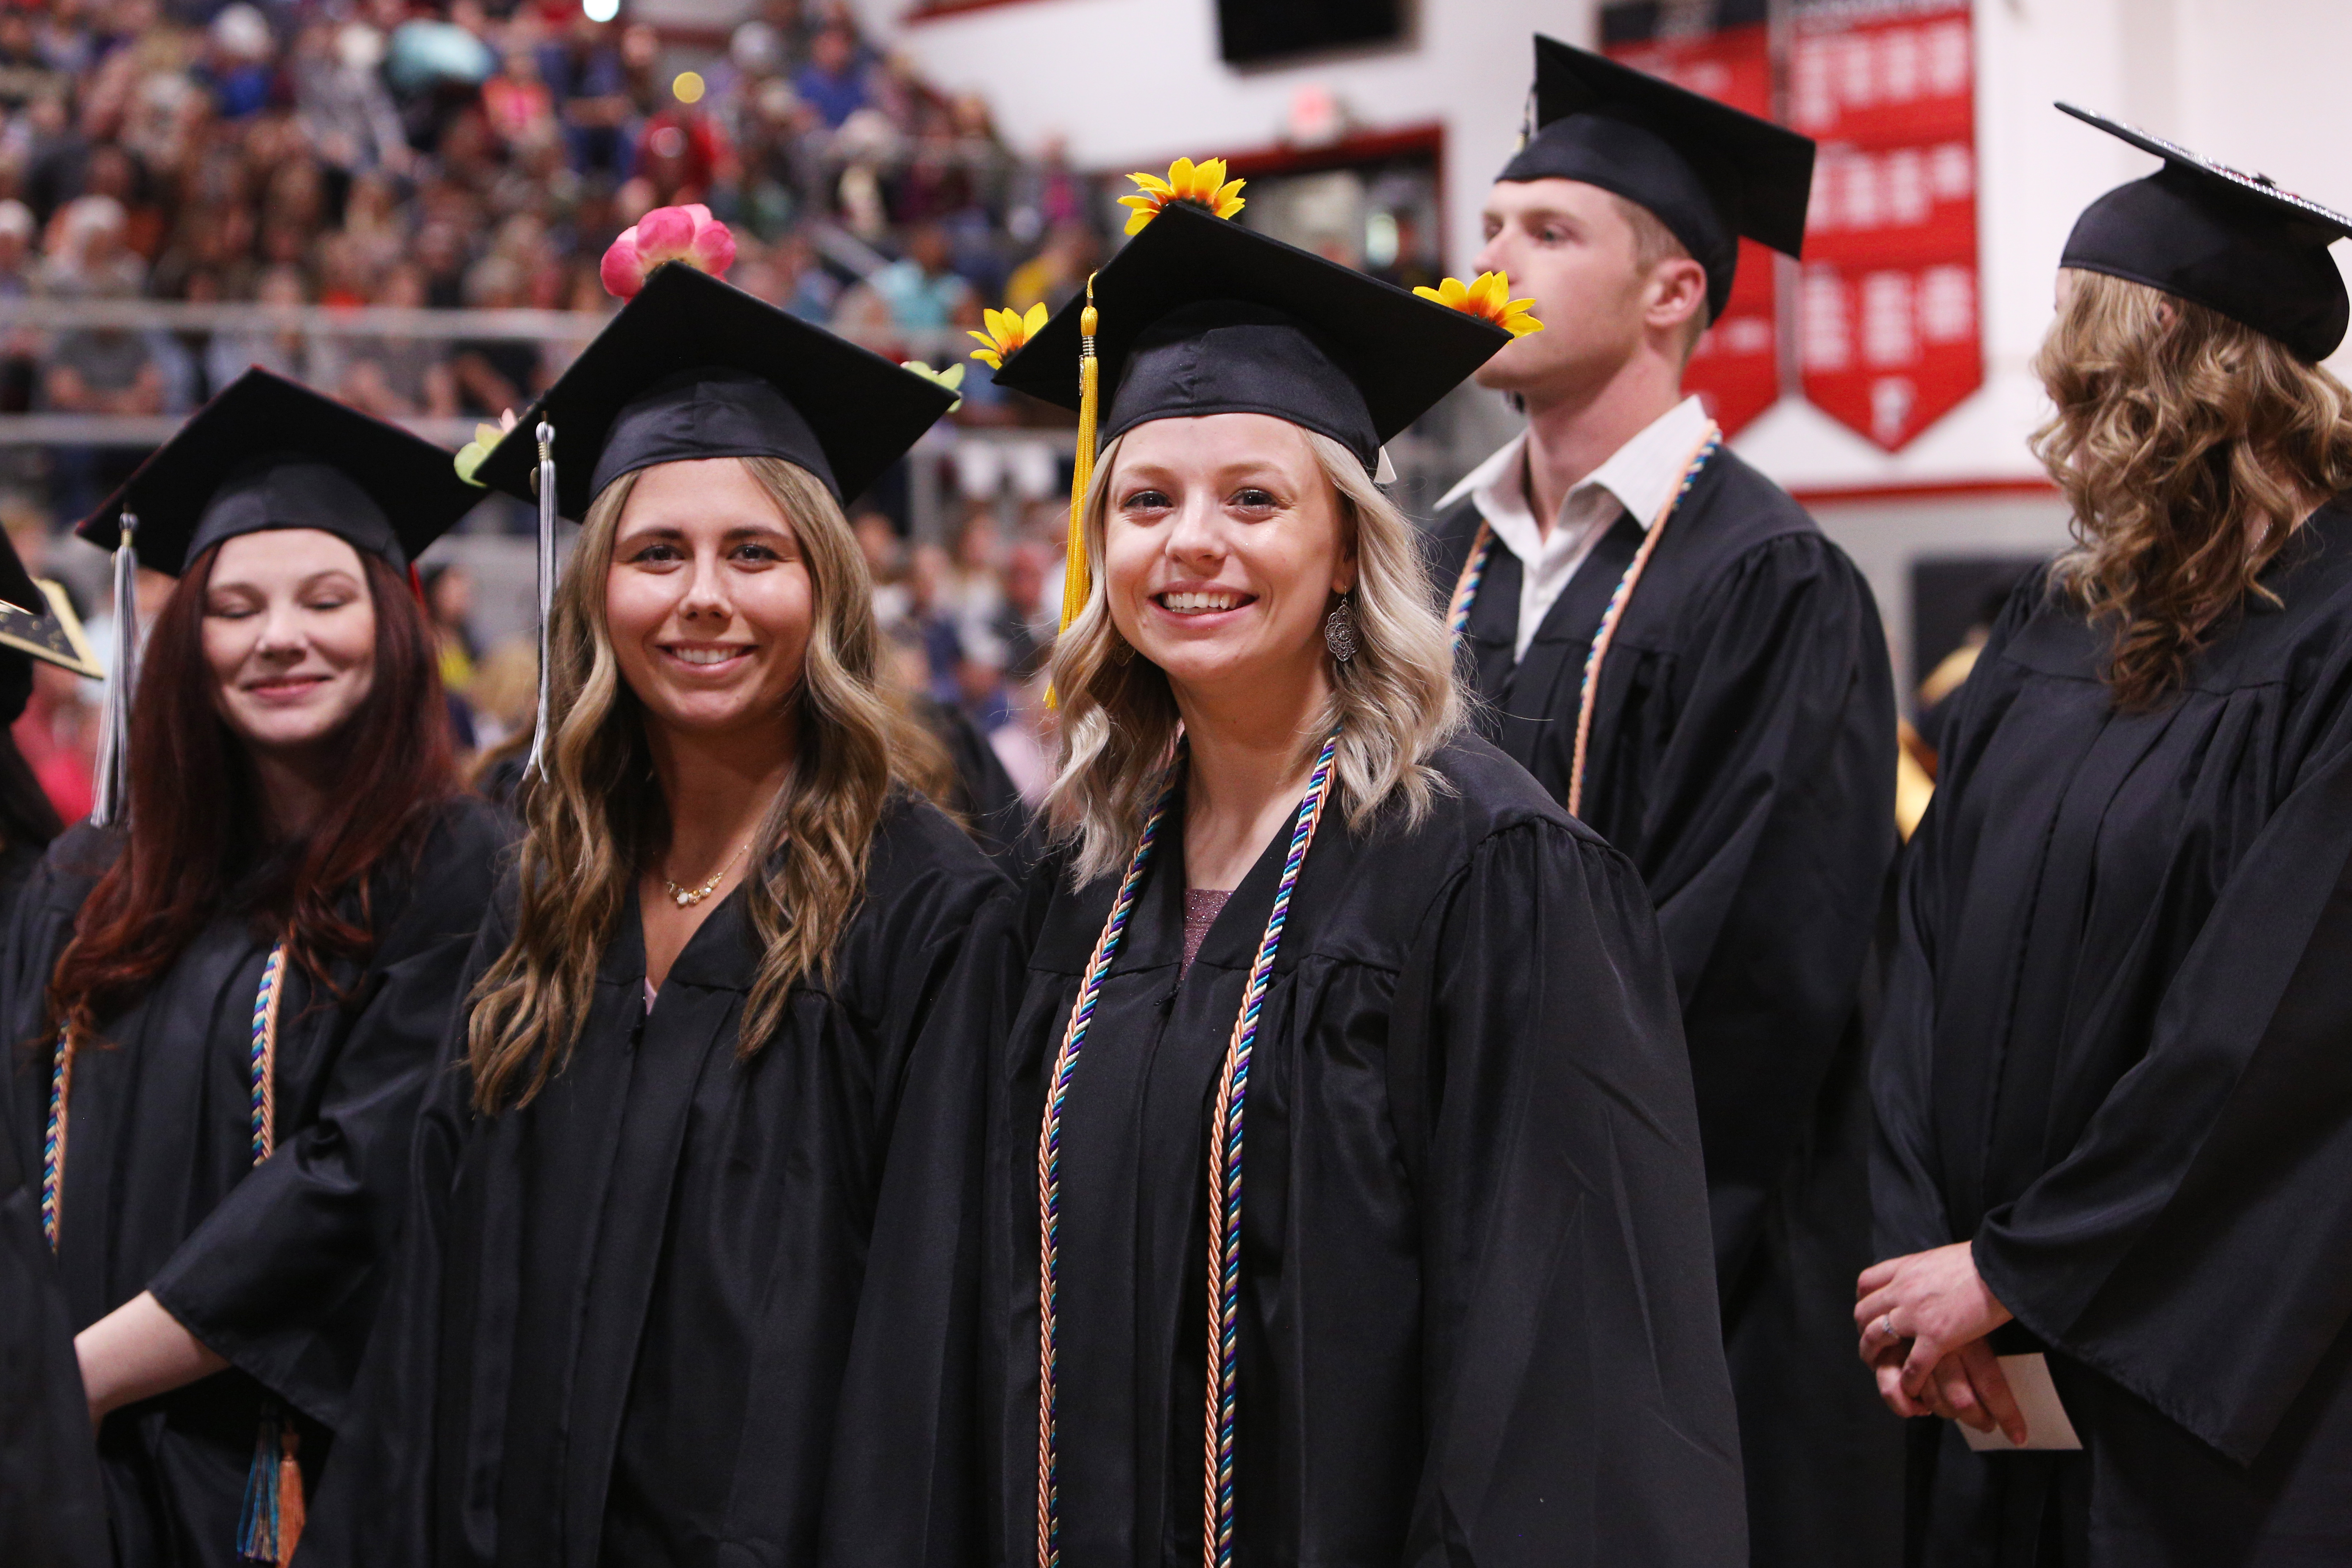 Students at FCC graduation